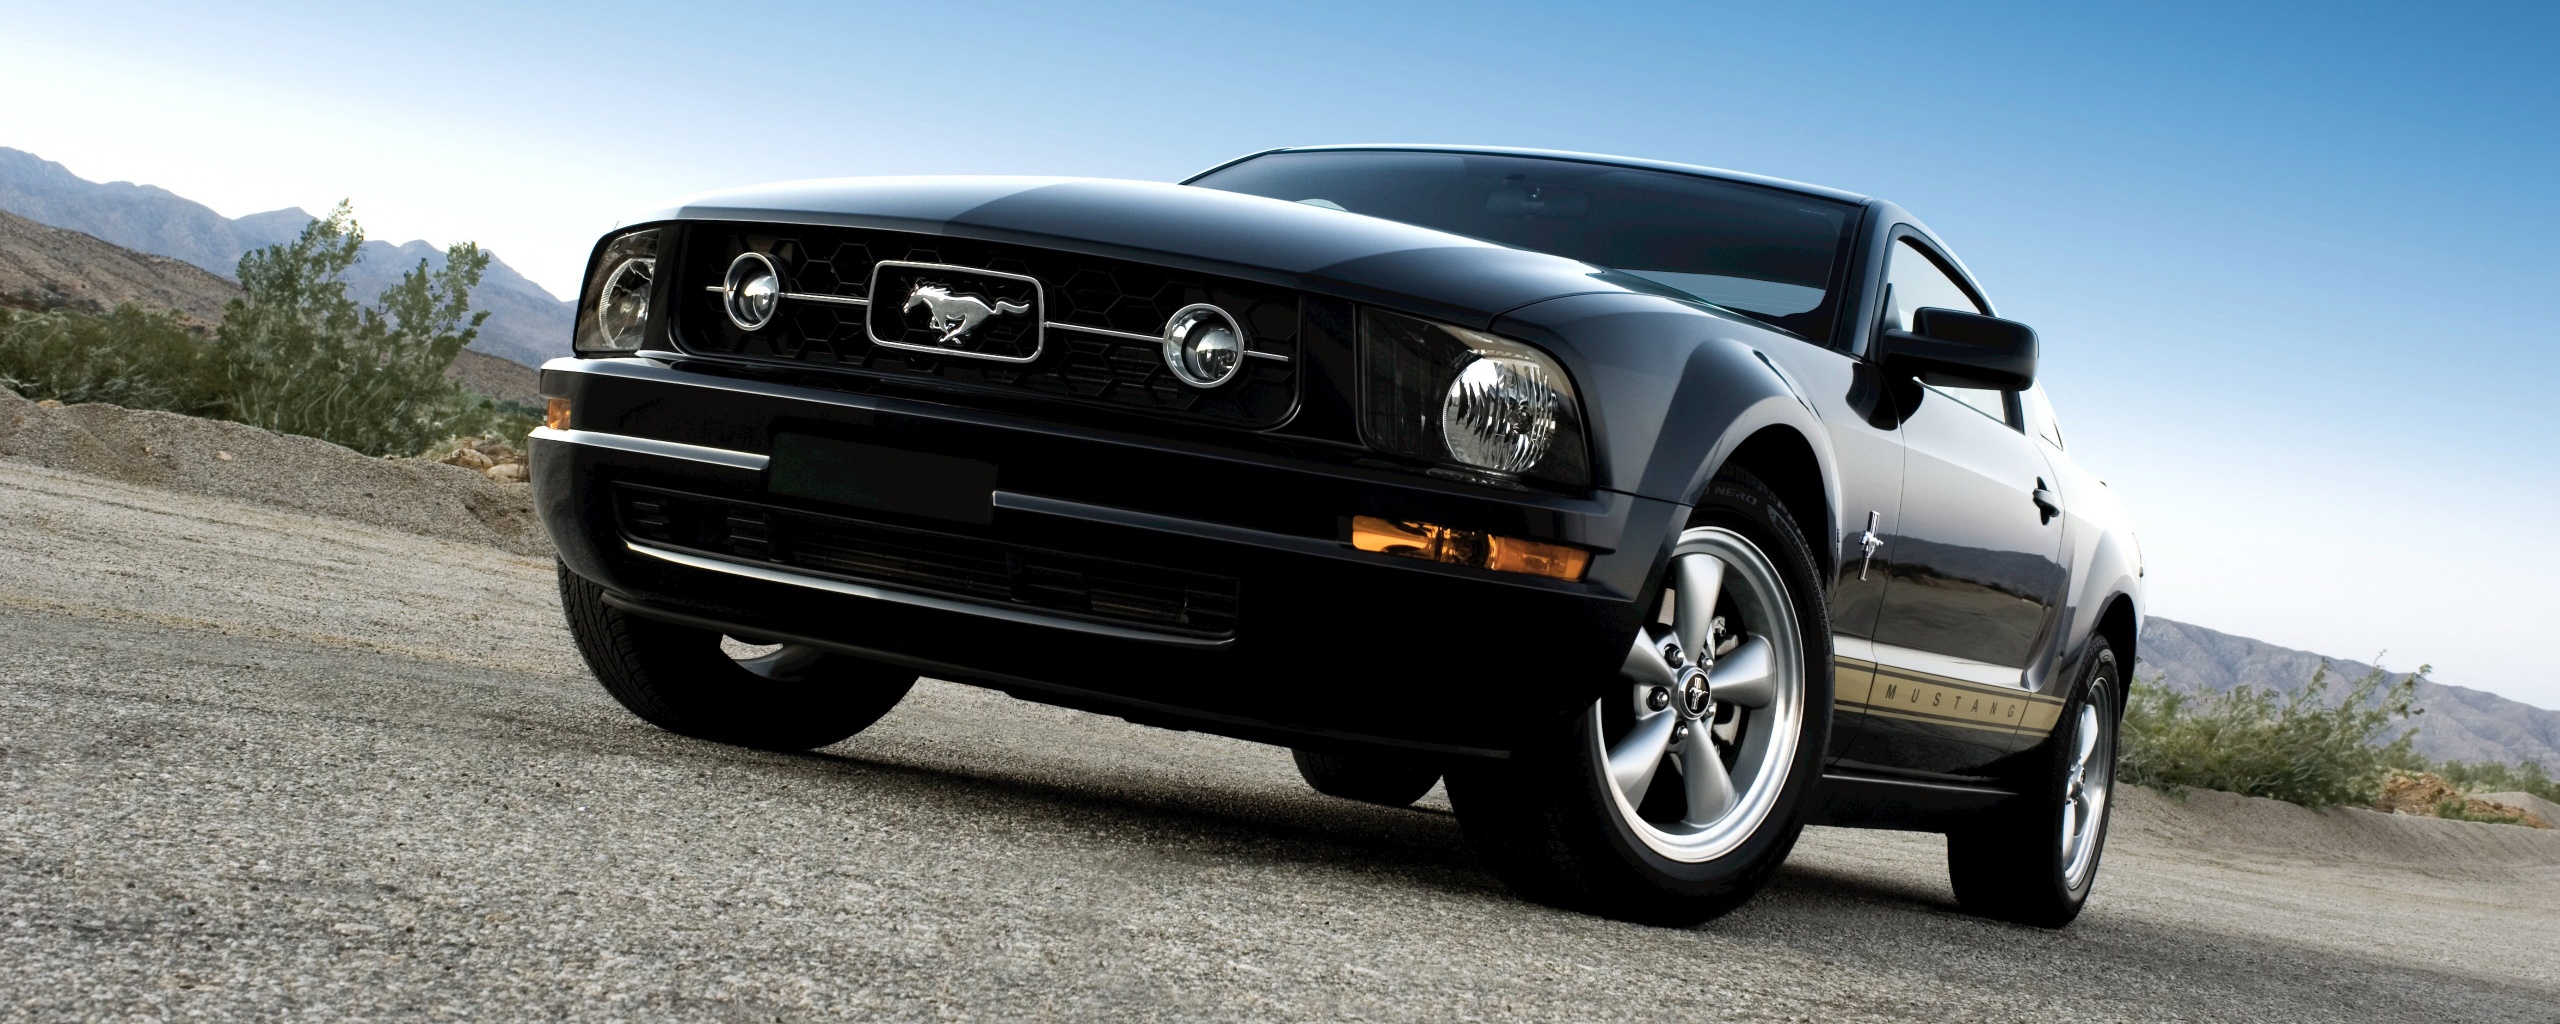 Ford Mustang обои